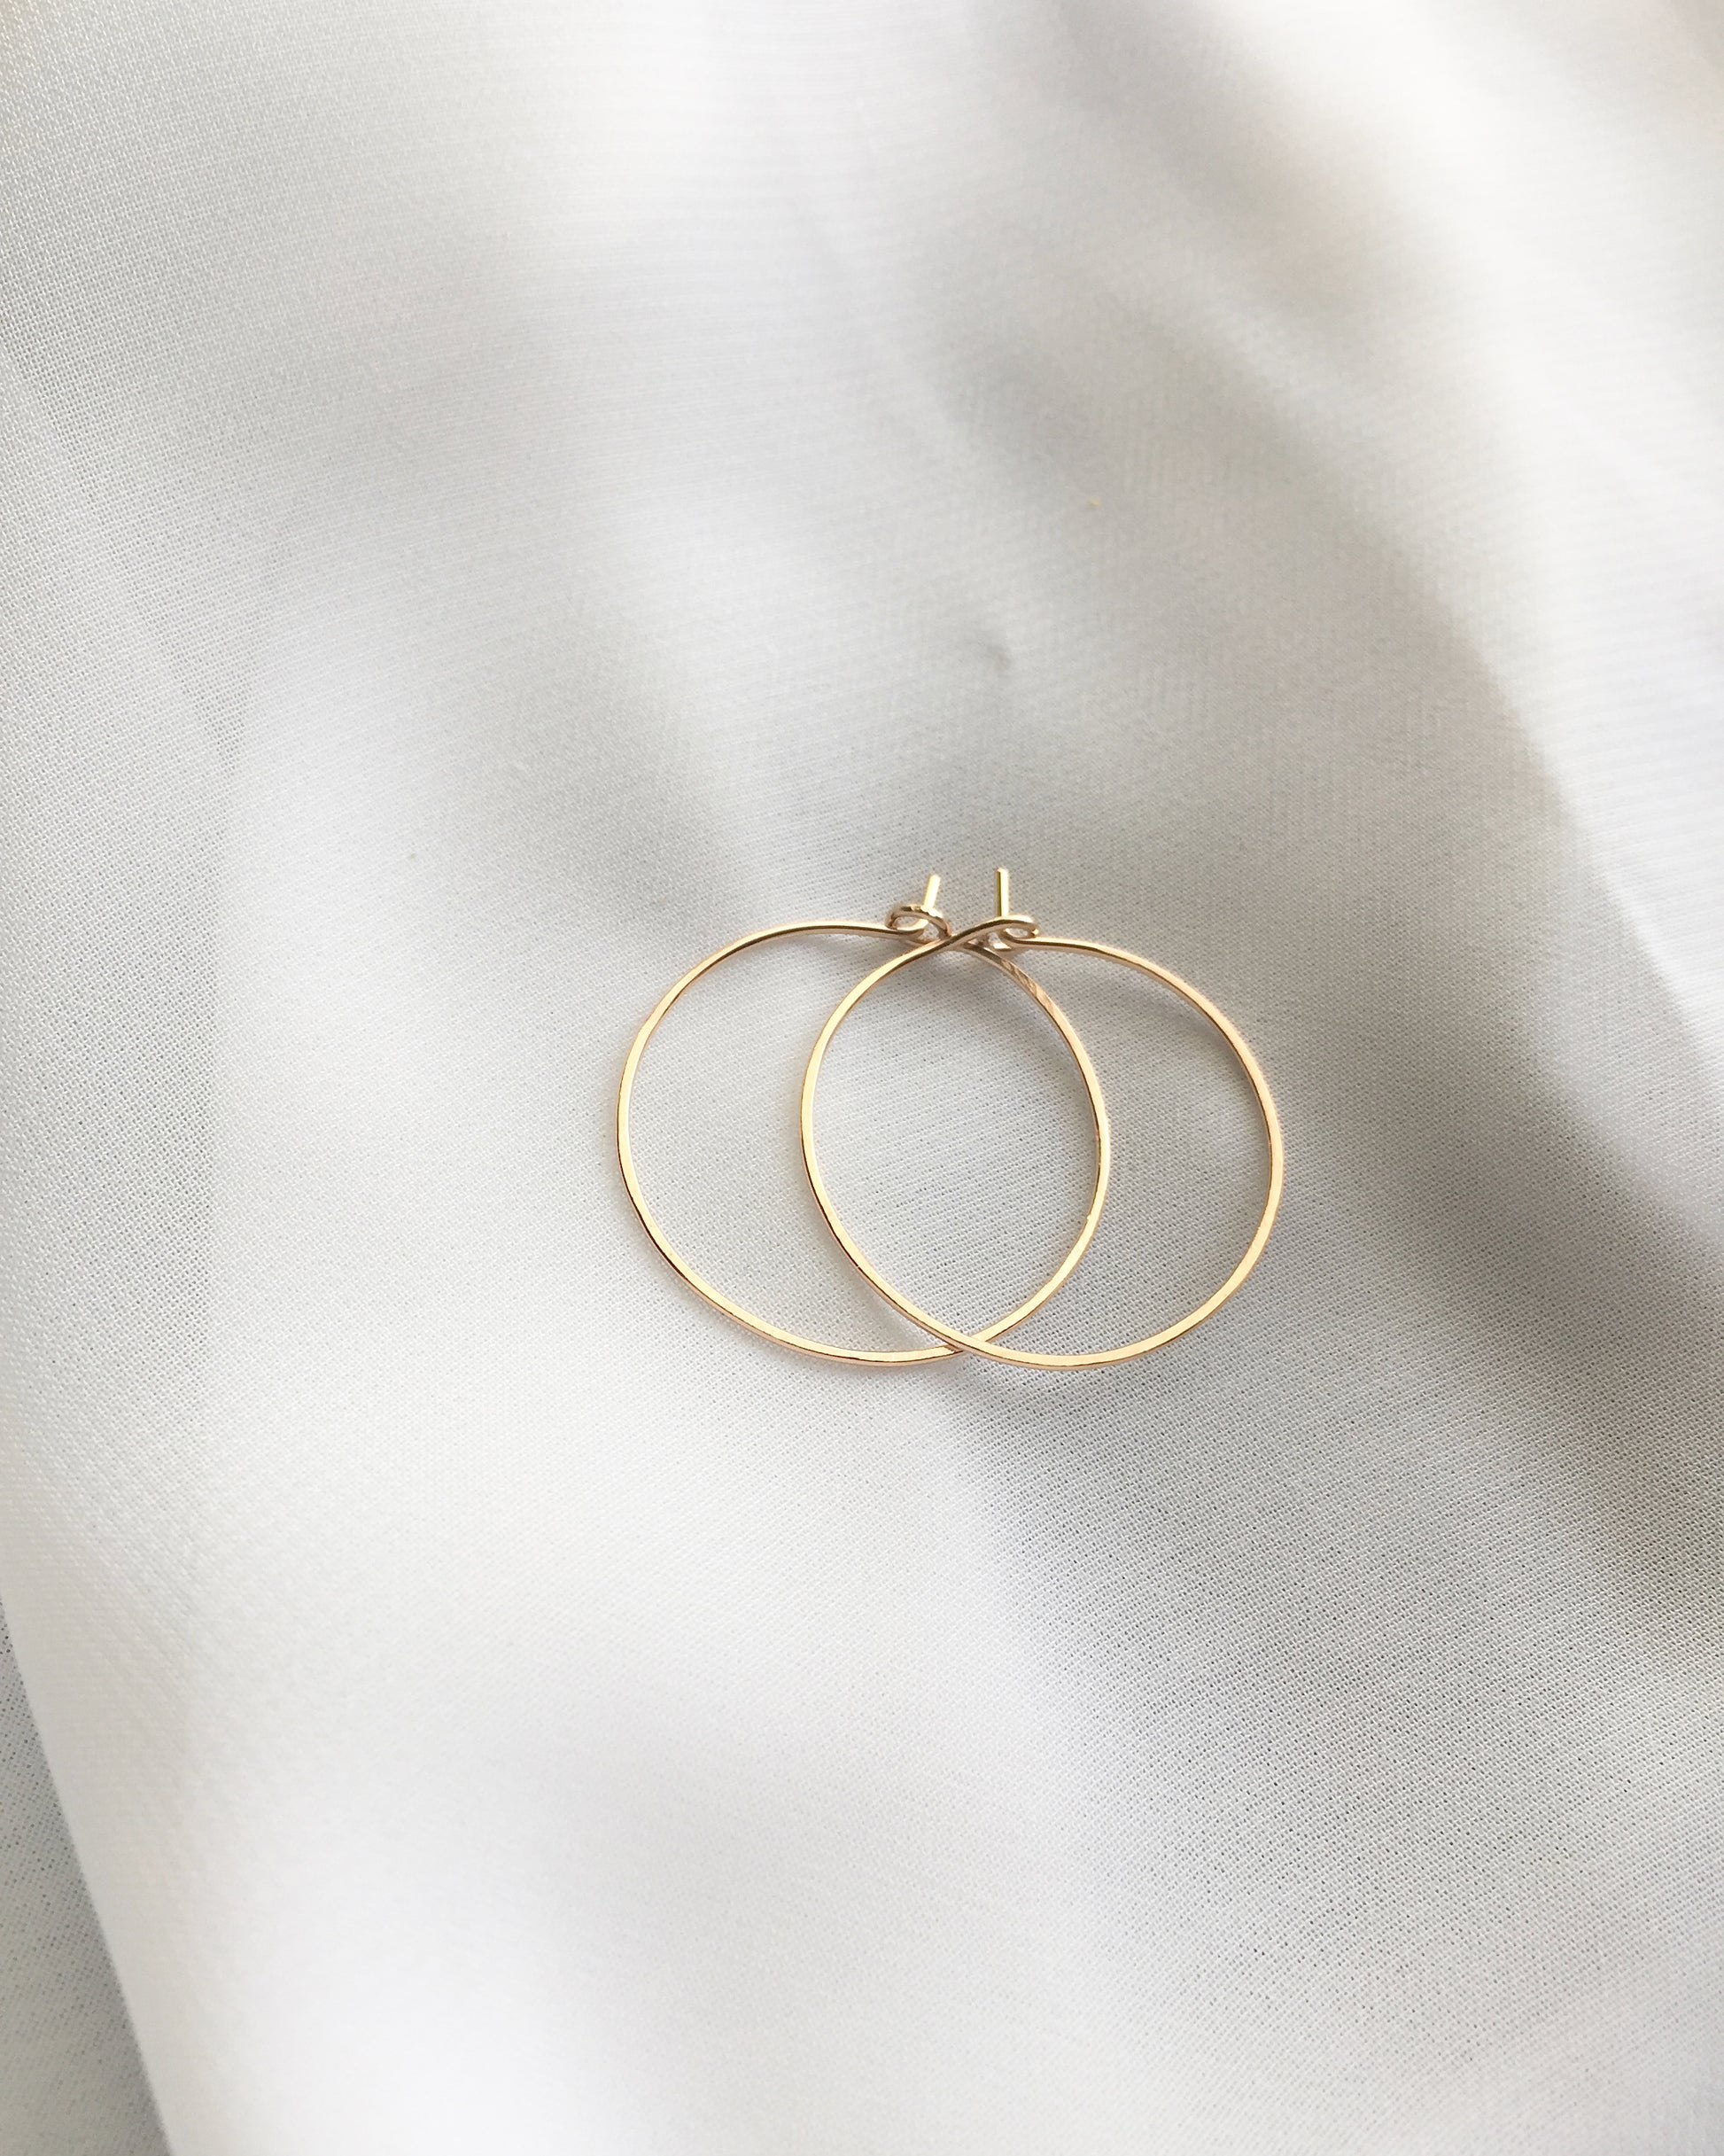 Medium Thin Hoop Earrings | Dainty Hoop Earrings | Simple Delicate Earrings | IB Jewelry 